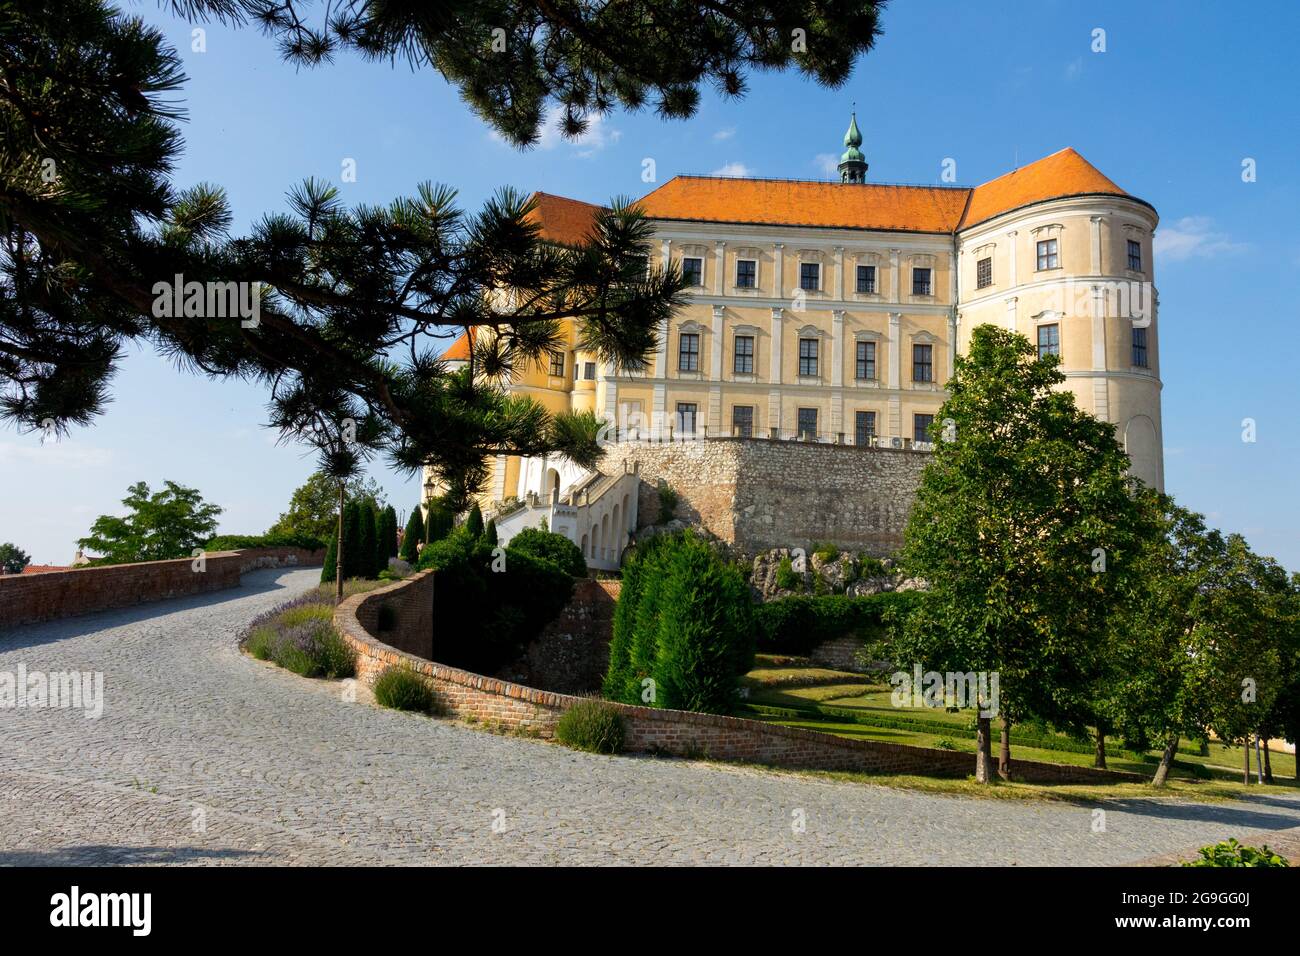 Blick auf die Burg Mikulov vom Garten Tschechische Republik, tschechischer Burggarten Stockfoto